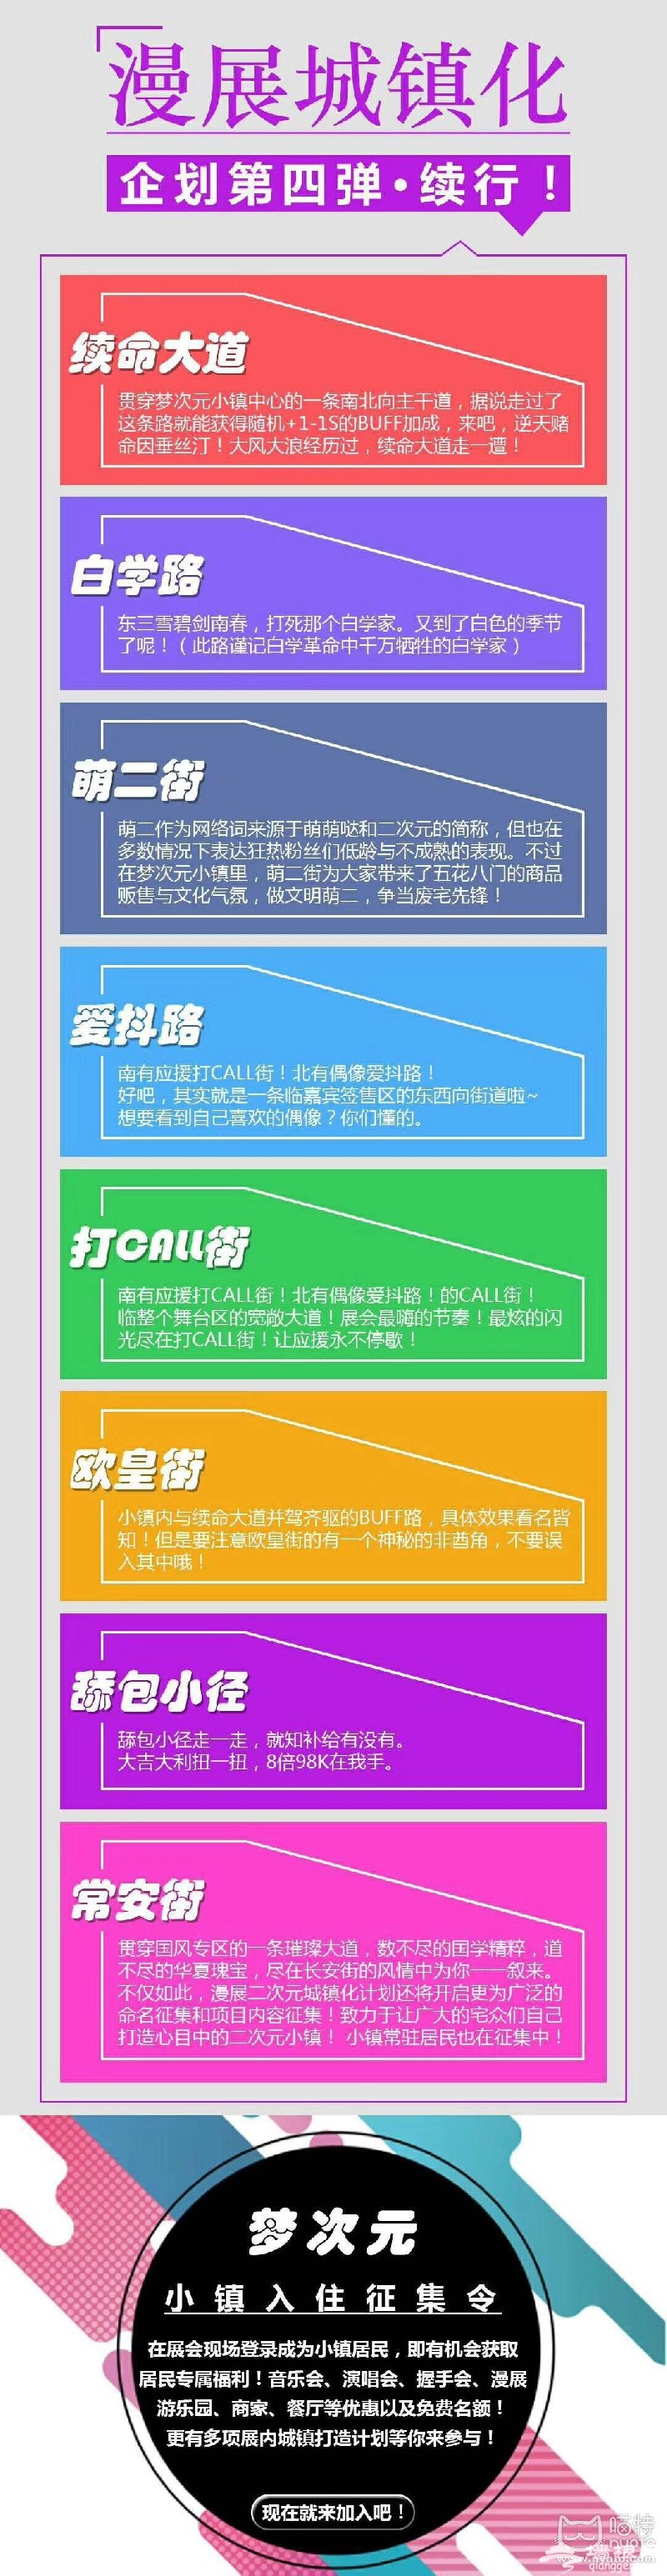 2018北京M19梦次元夏日祭门票价格、种类、购买入口[墙根网]